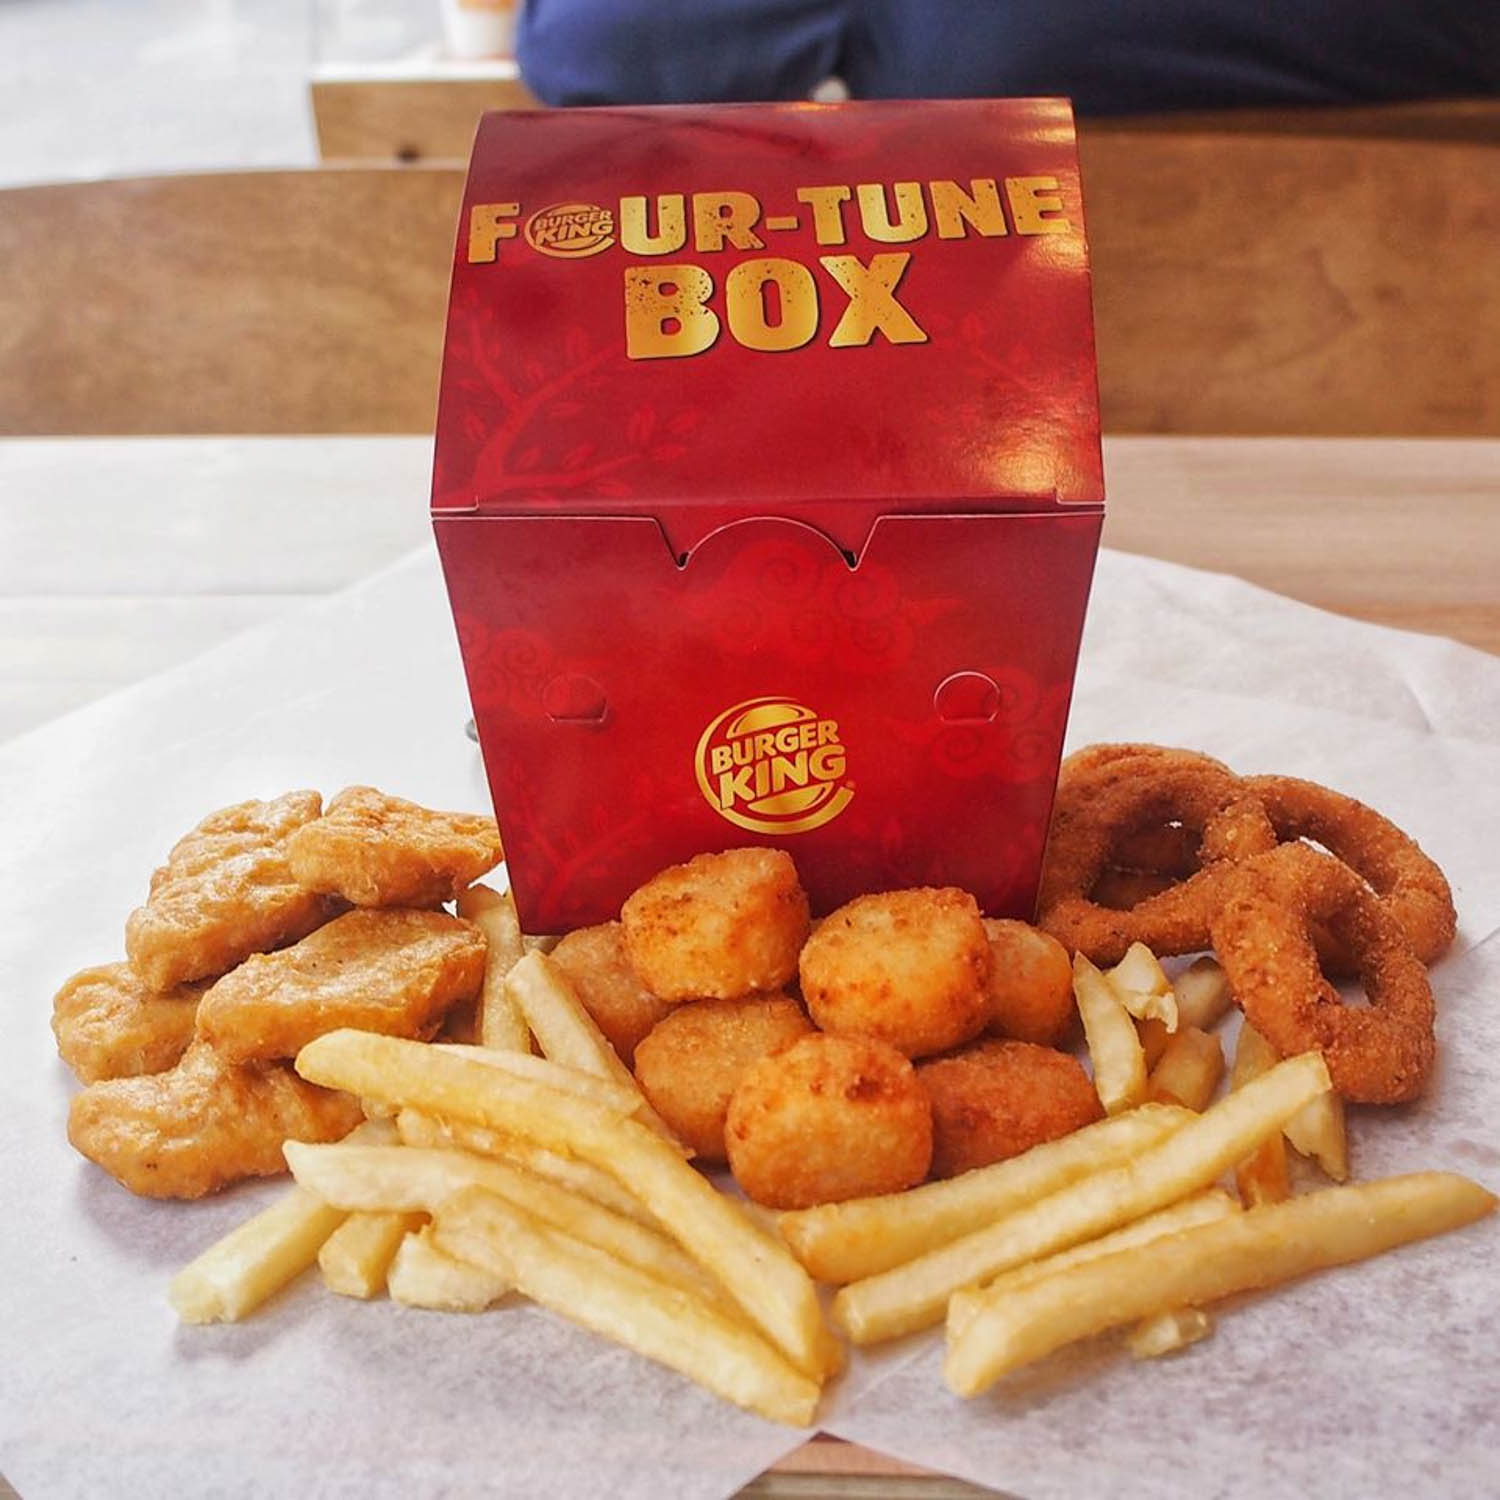 Burger King - Four-Tune Box